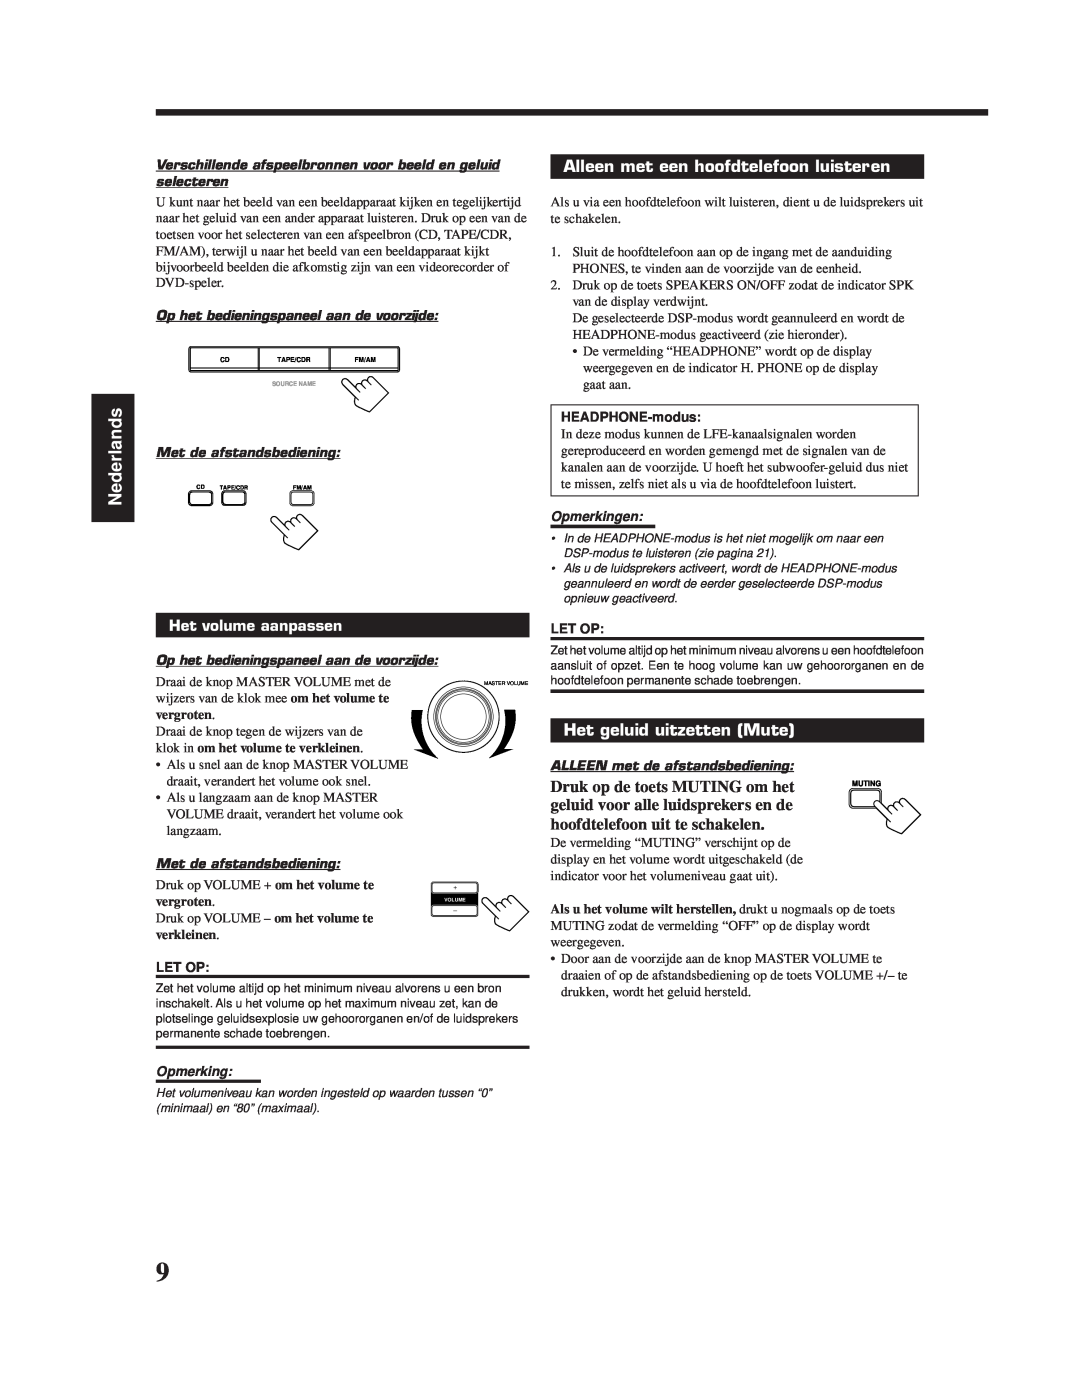 JVC RX-6010RBK manual Alleen met een hoofdtelefoon luisteren, Het geluid uitzetten Mute, Nederlands, Het volume aanpassen 